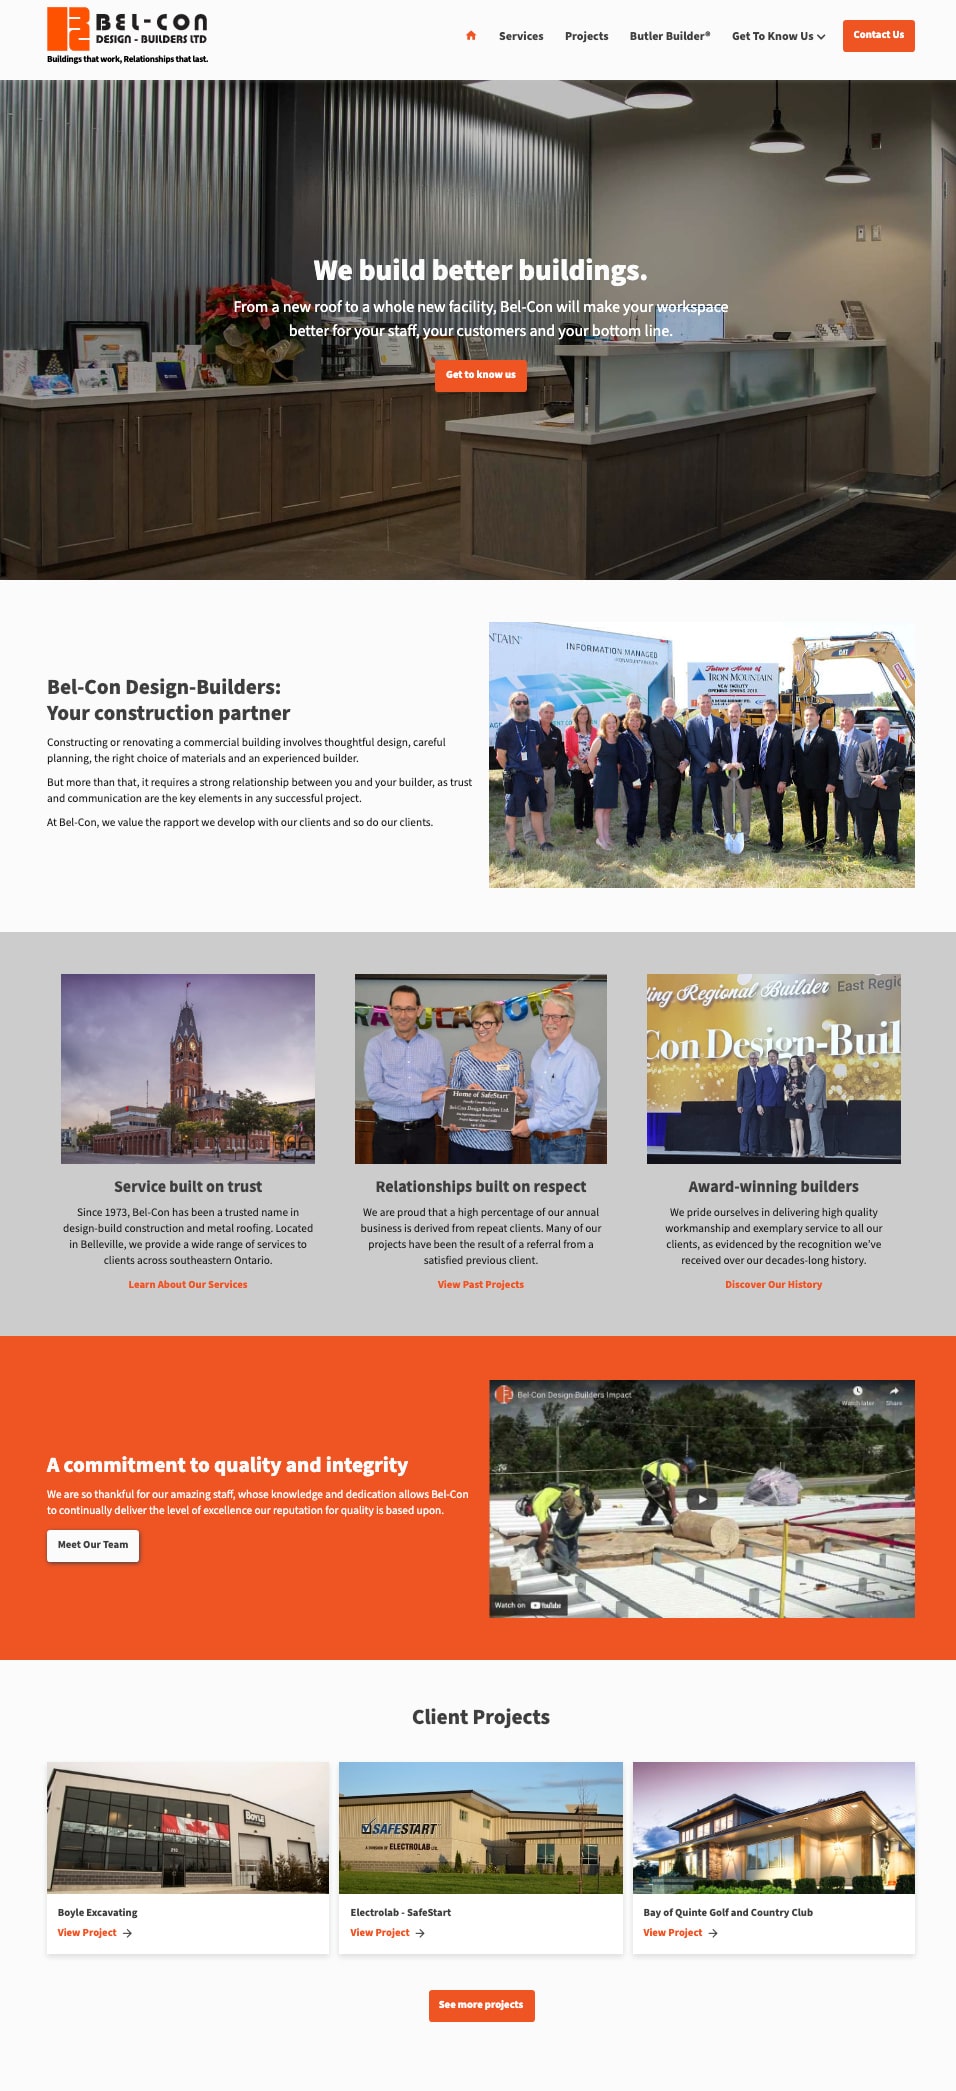 Website project for Bel-Con Design-Builders Ltd